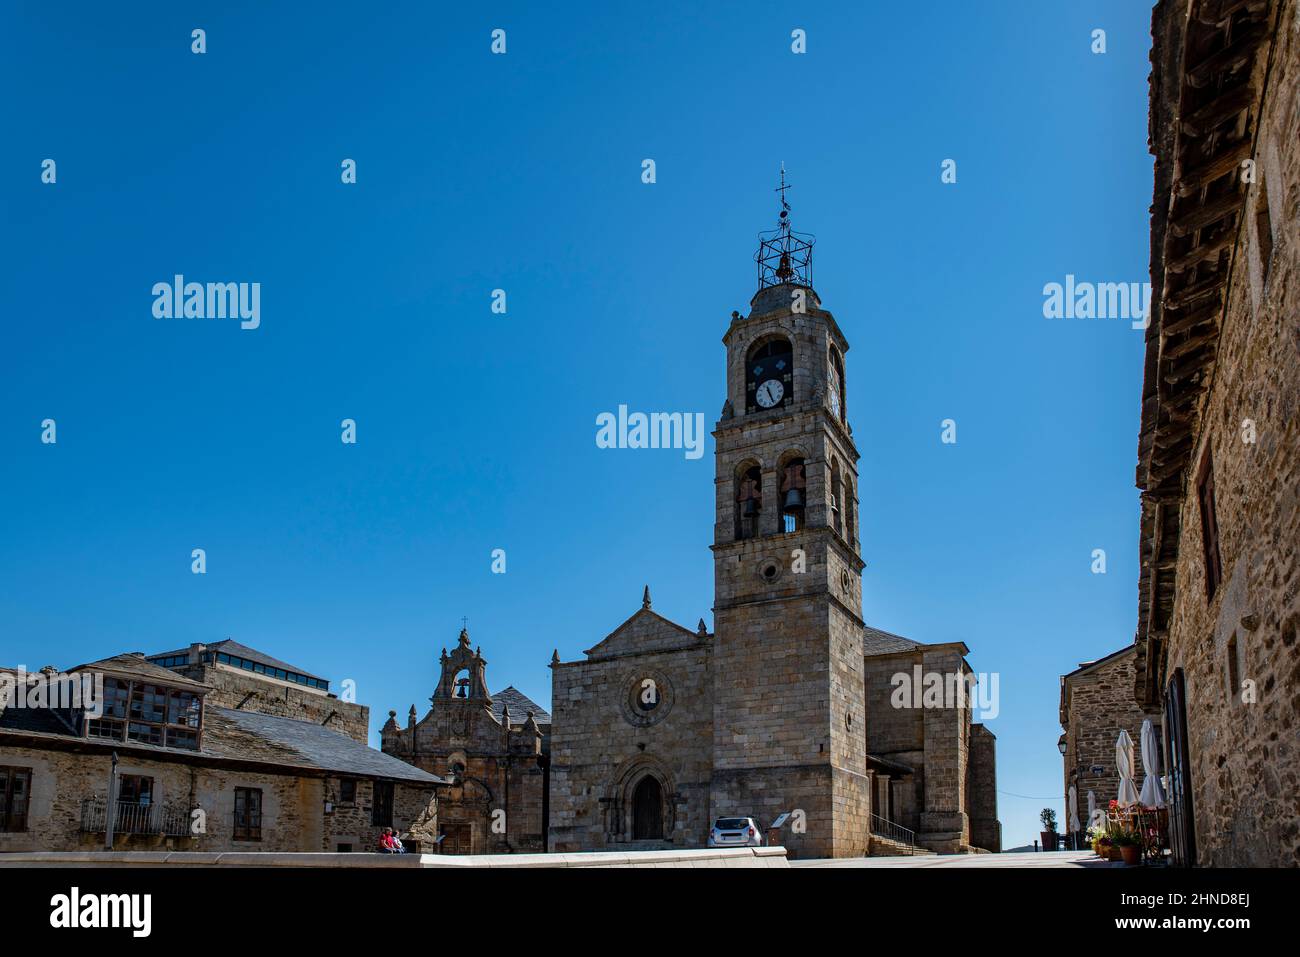 Puebla de Sanabria, Zamora, Spain;July 2021: Traditional architecture, Hermitage of San Cayetano and Church of Santa María de Azogue in Puebla de Sana Stock Photo